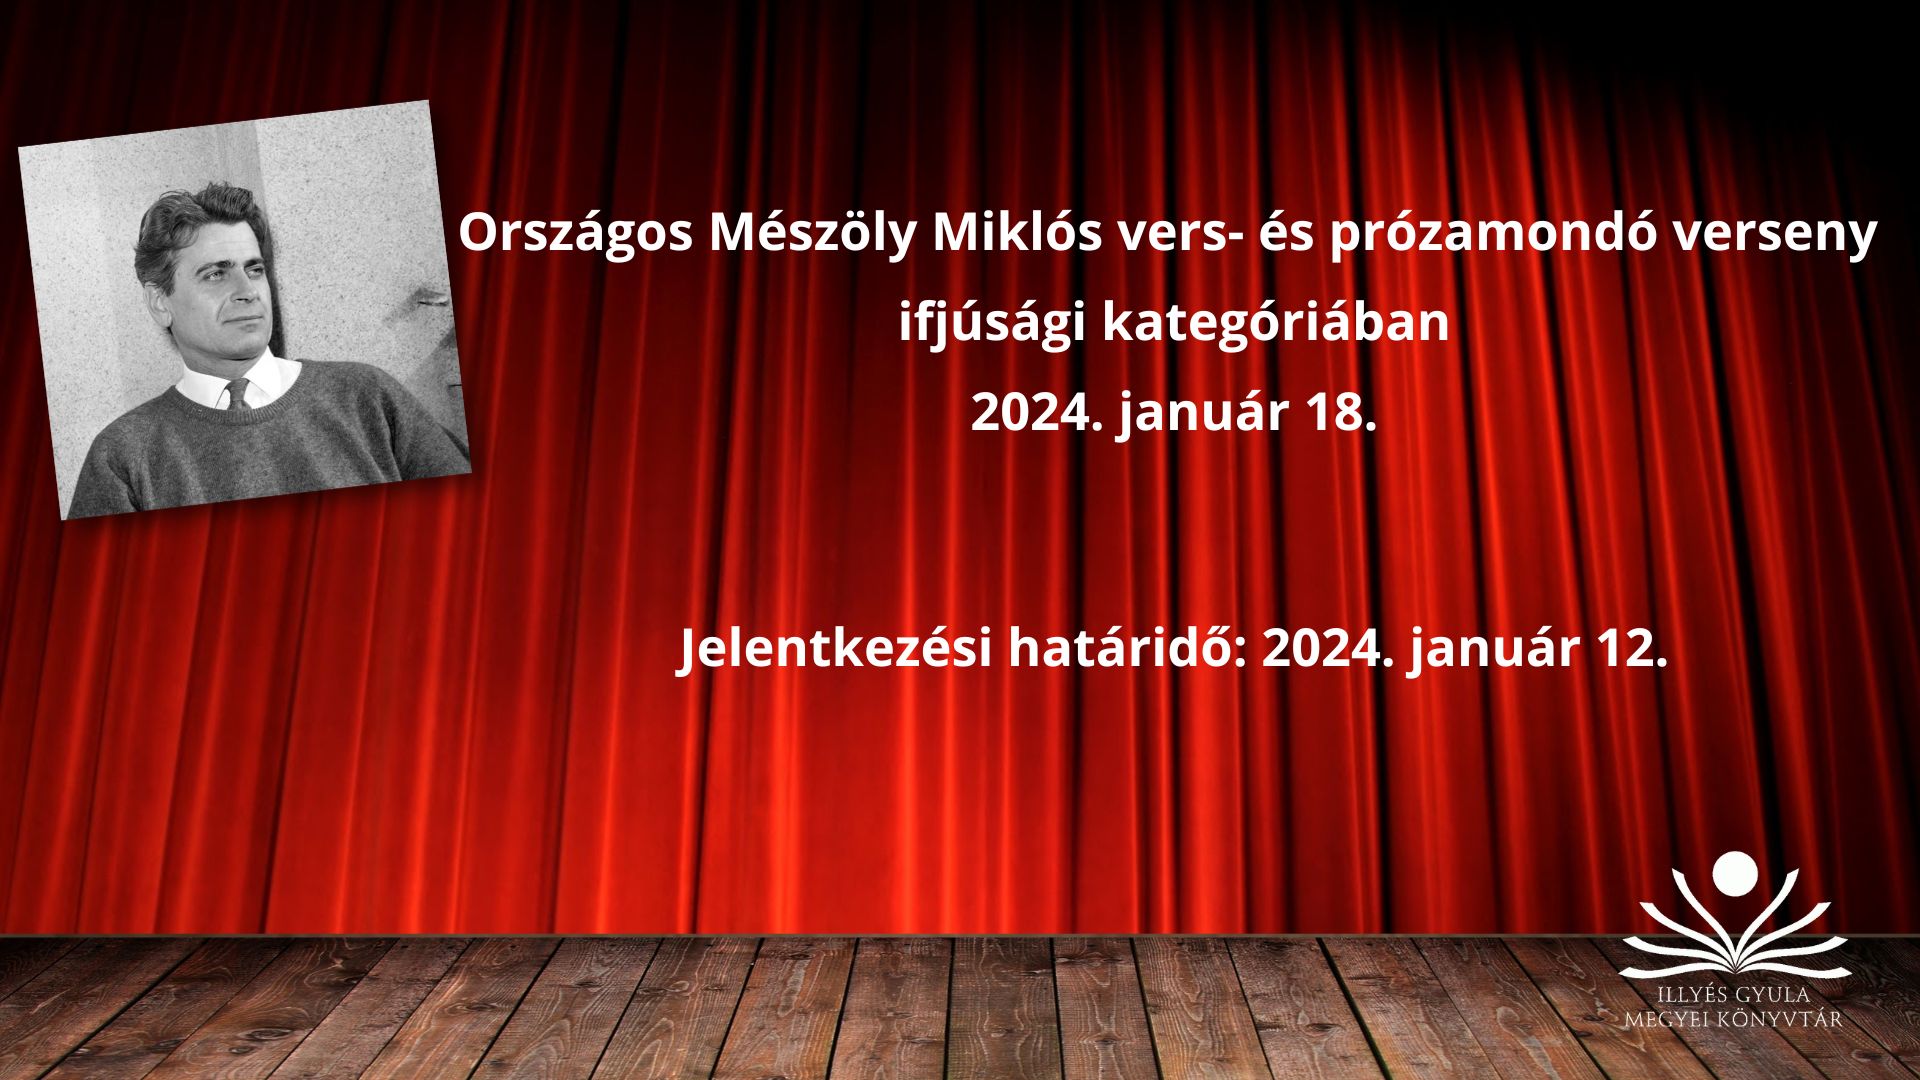 Mészöly Miklós vers- és prózamondó verseny 2024